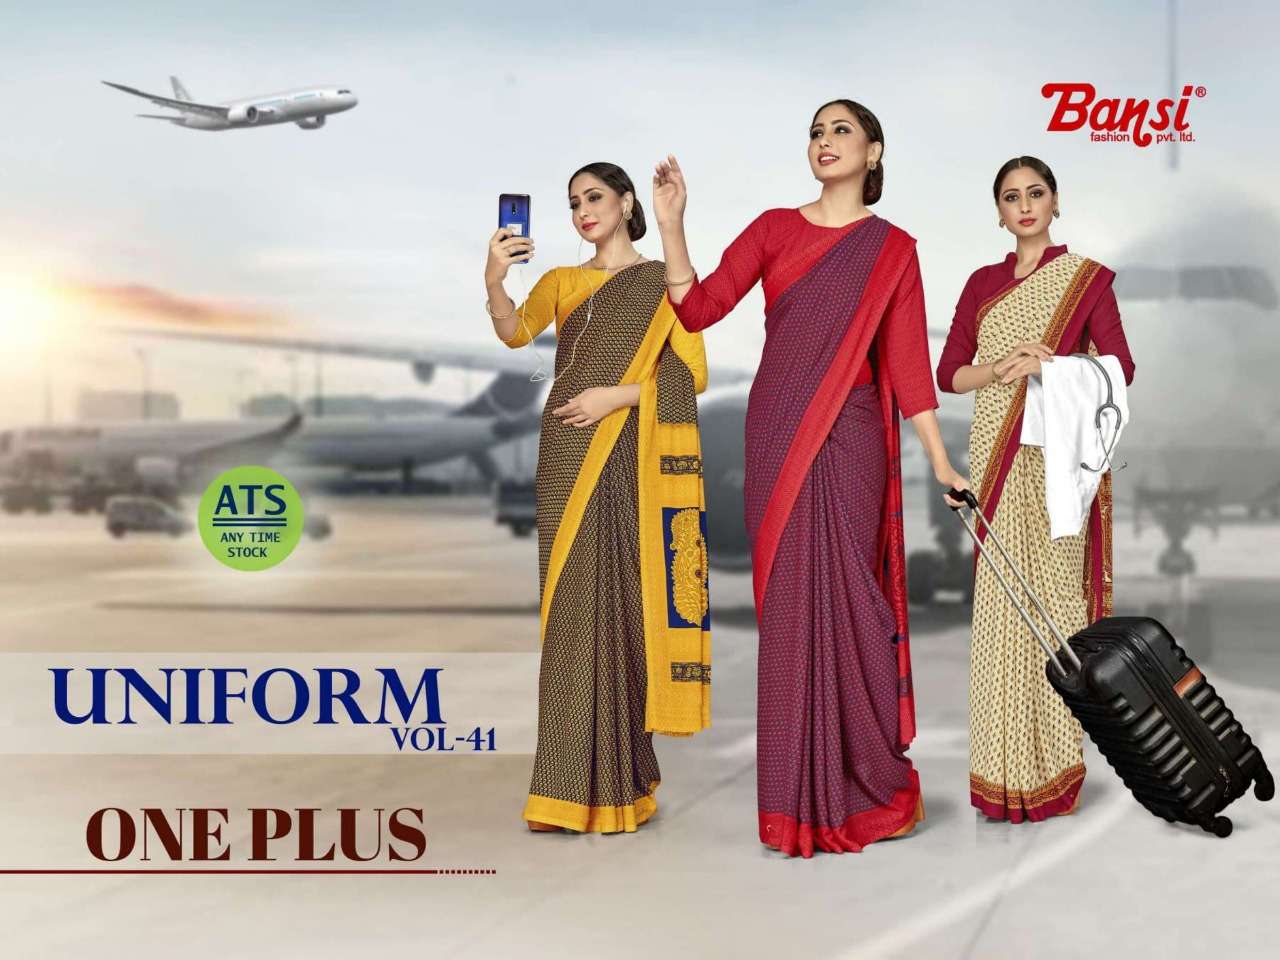 bansi uniform vol 41 one plus butter crepe air hostess uniform sarees collection